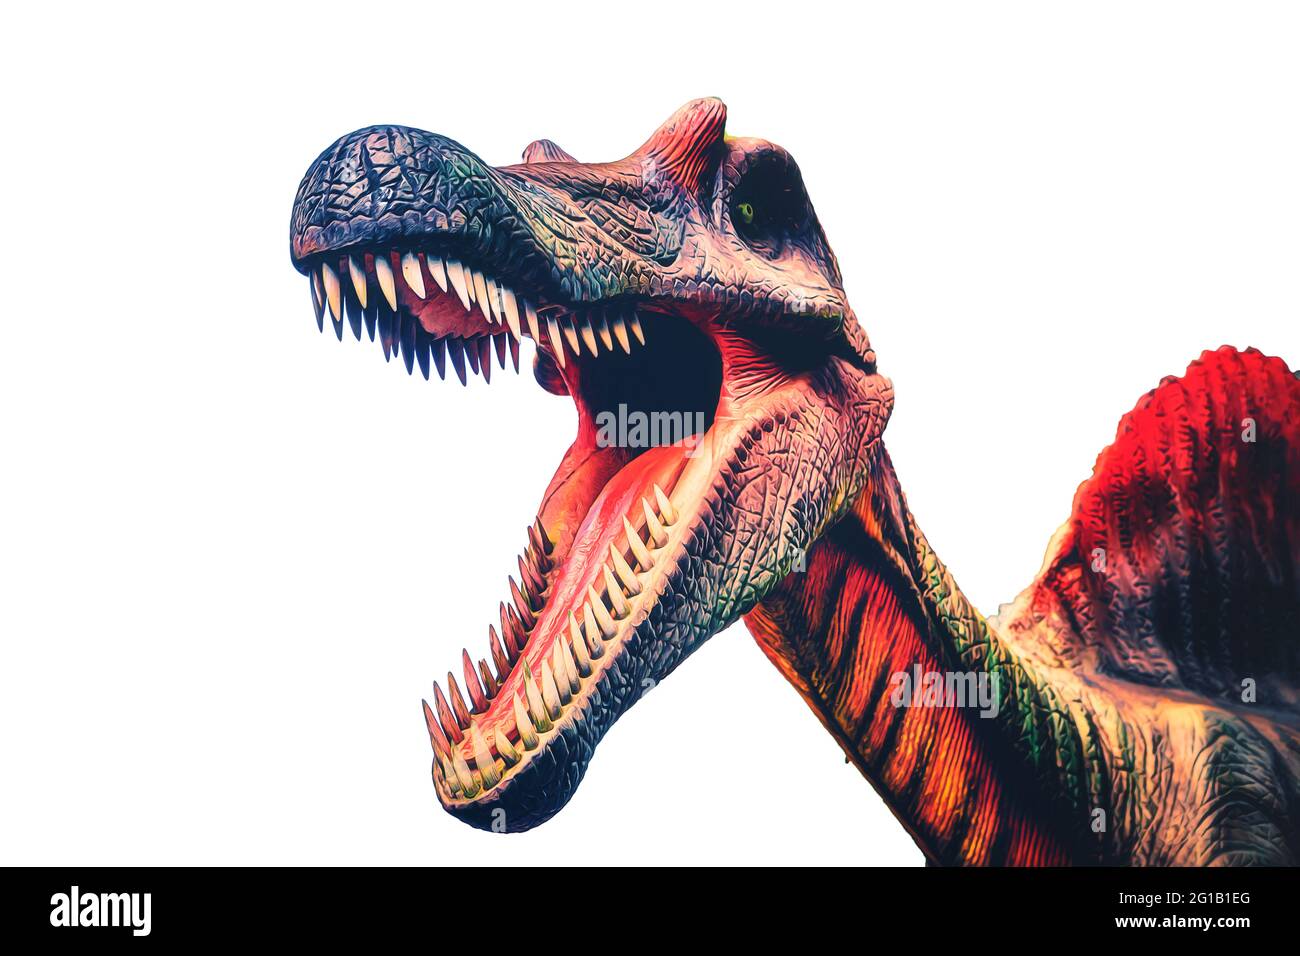 Spinosaurus, aufgenommen in freier Wildbahn und zu einem kunstvollen Pop-Art Druck mit Photoshop verfeinert. Stock Photo